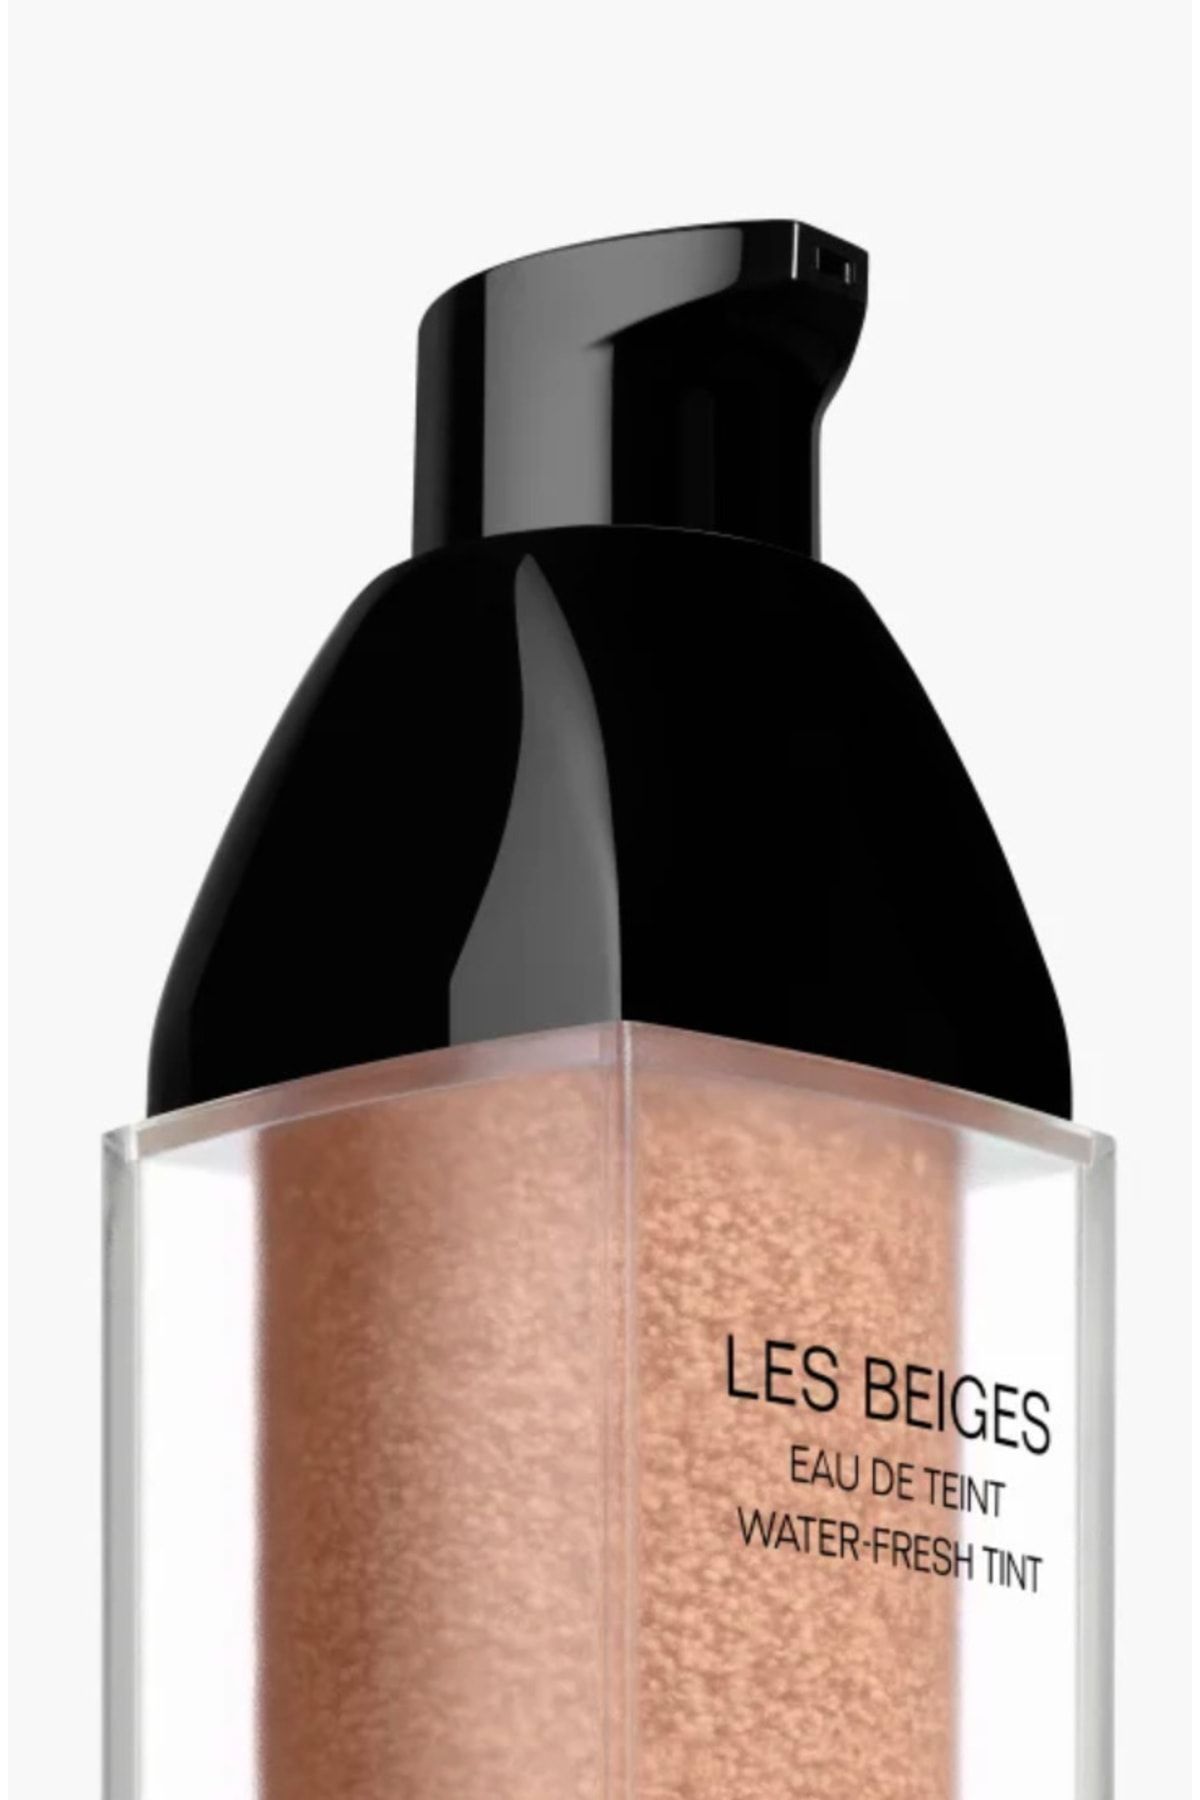 Chanel کرم پودر رقیق و سبک Les Beiges زیبایی طبیعی و درخشان